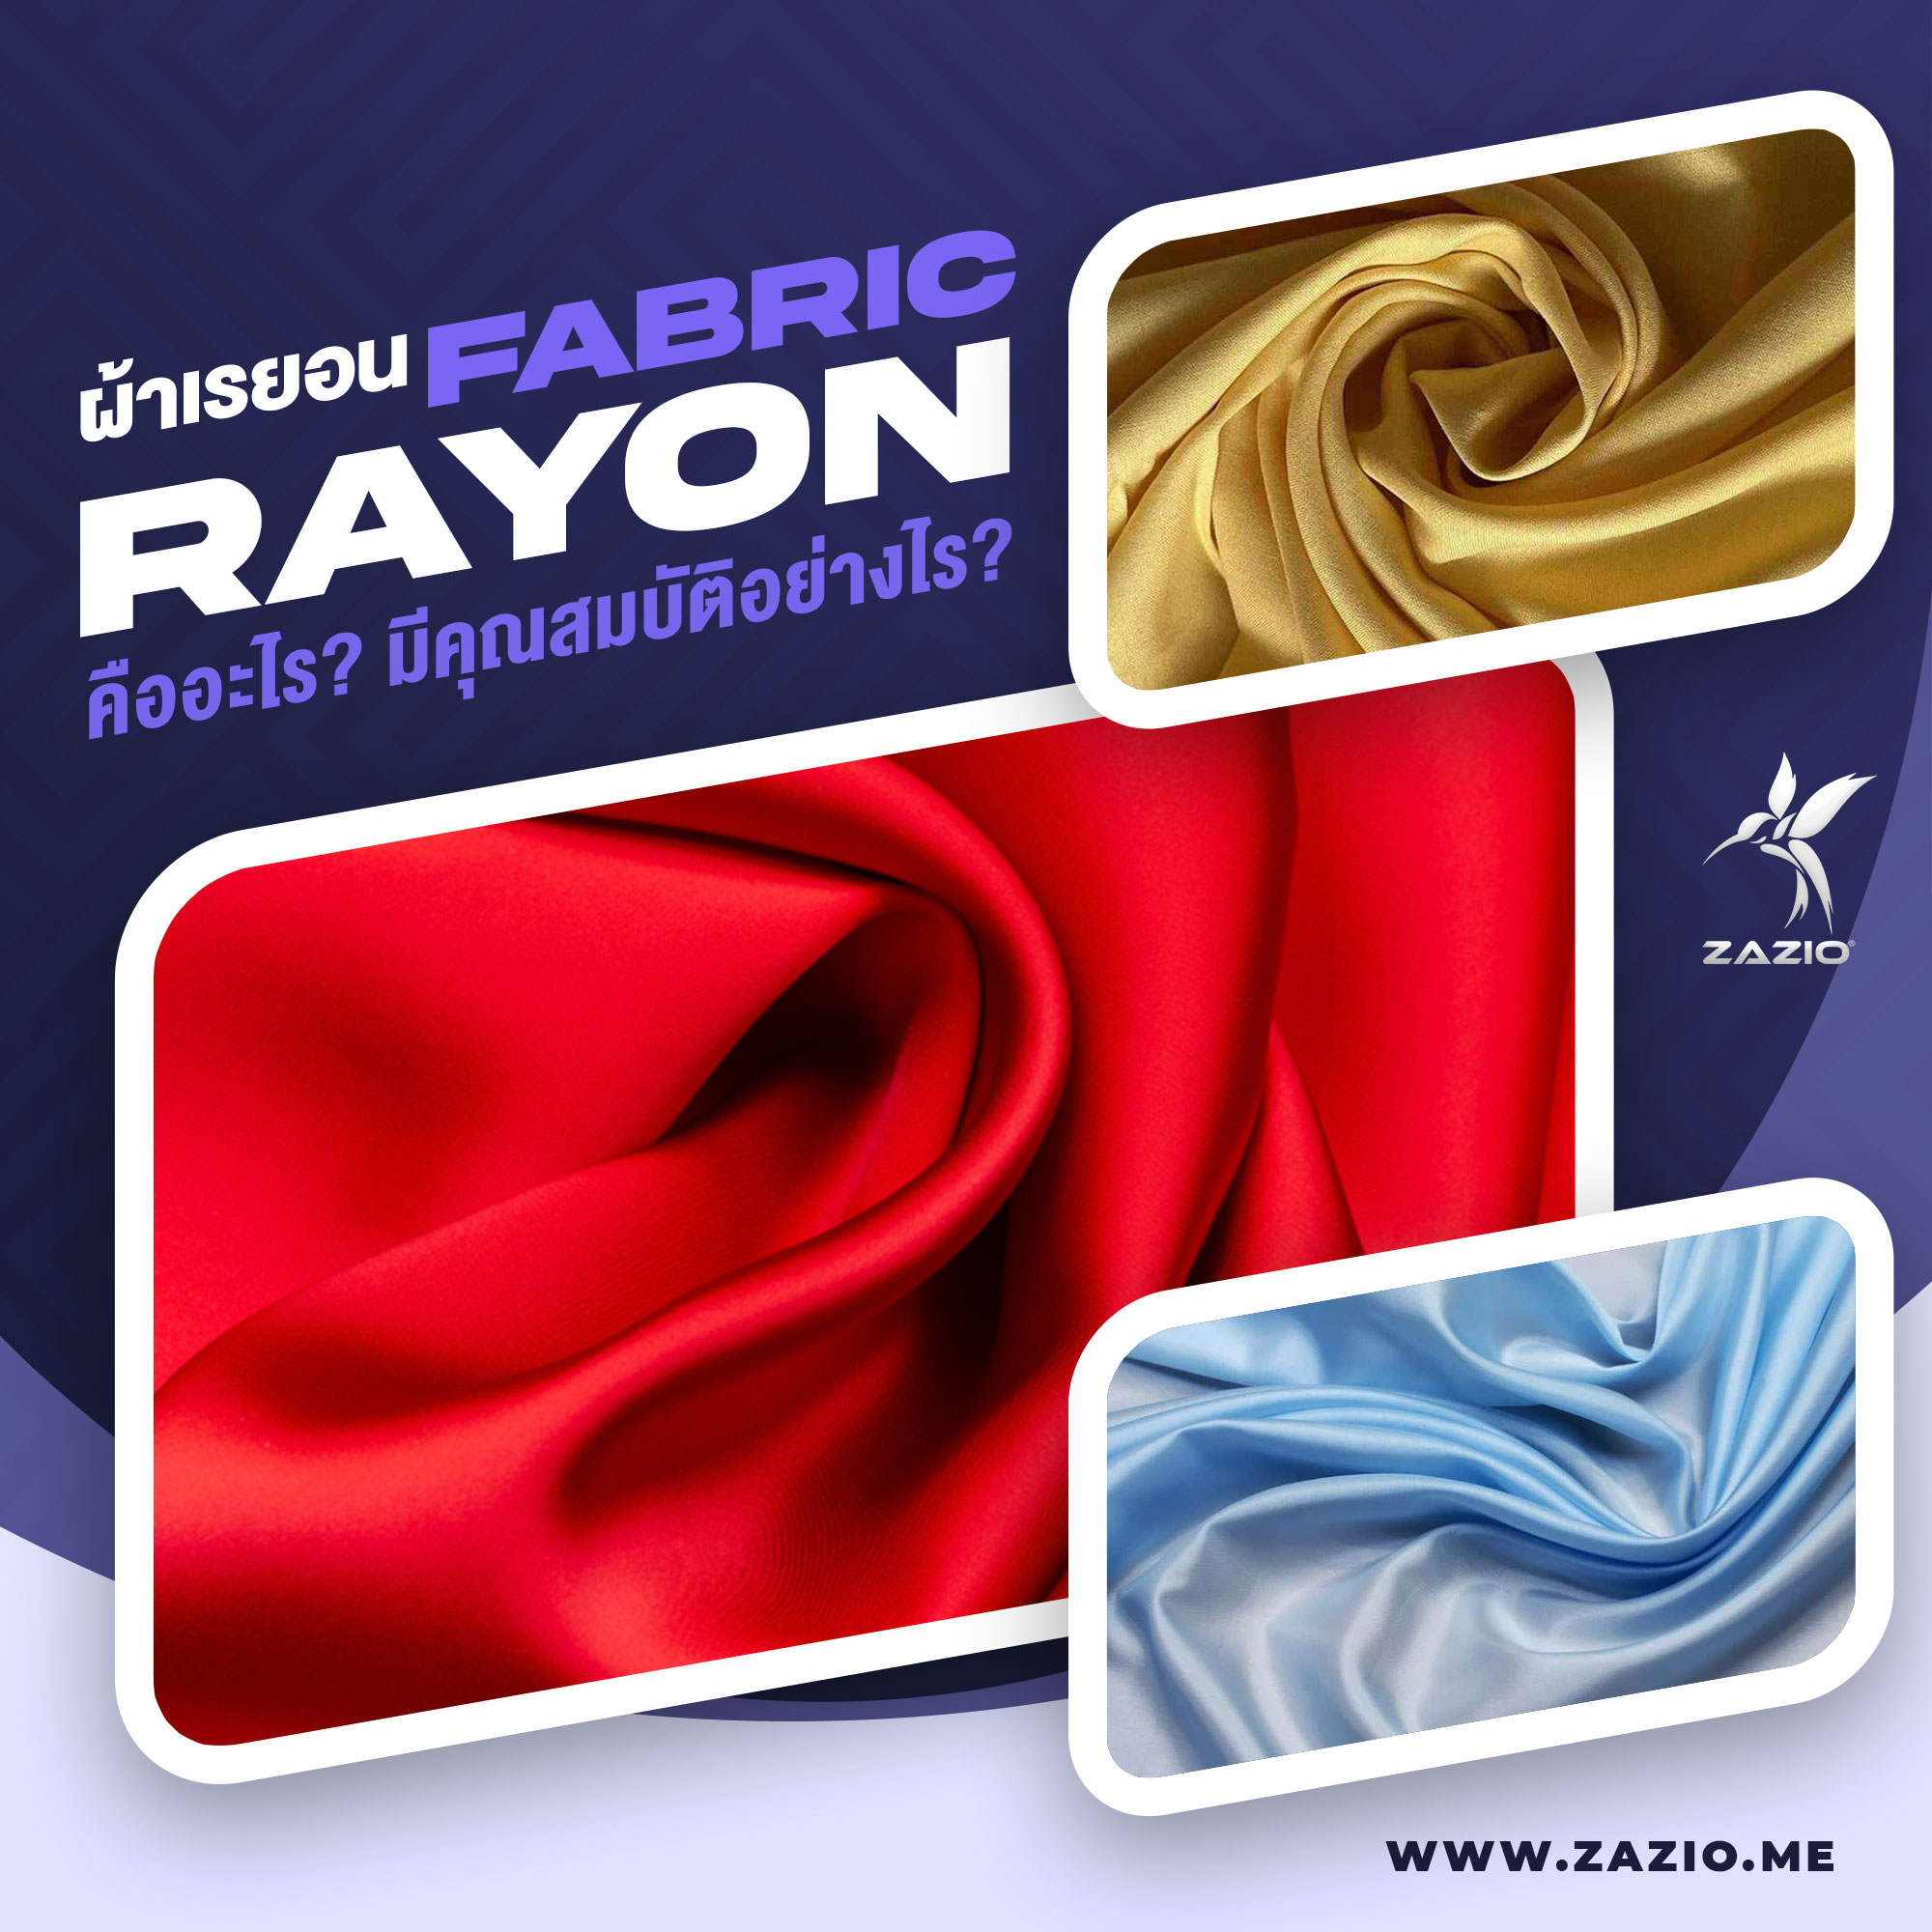 ผ้าเรยอน (Rayon Fabric) คืออะไร ข้อดีข้อเสียอย่างไร?